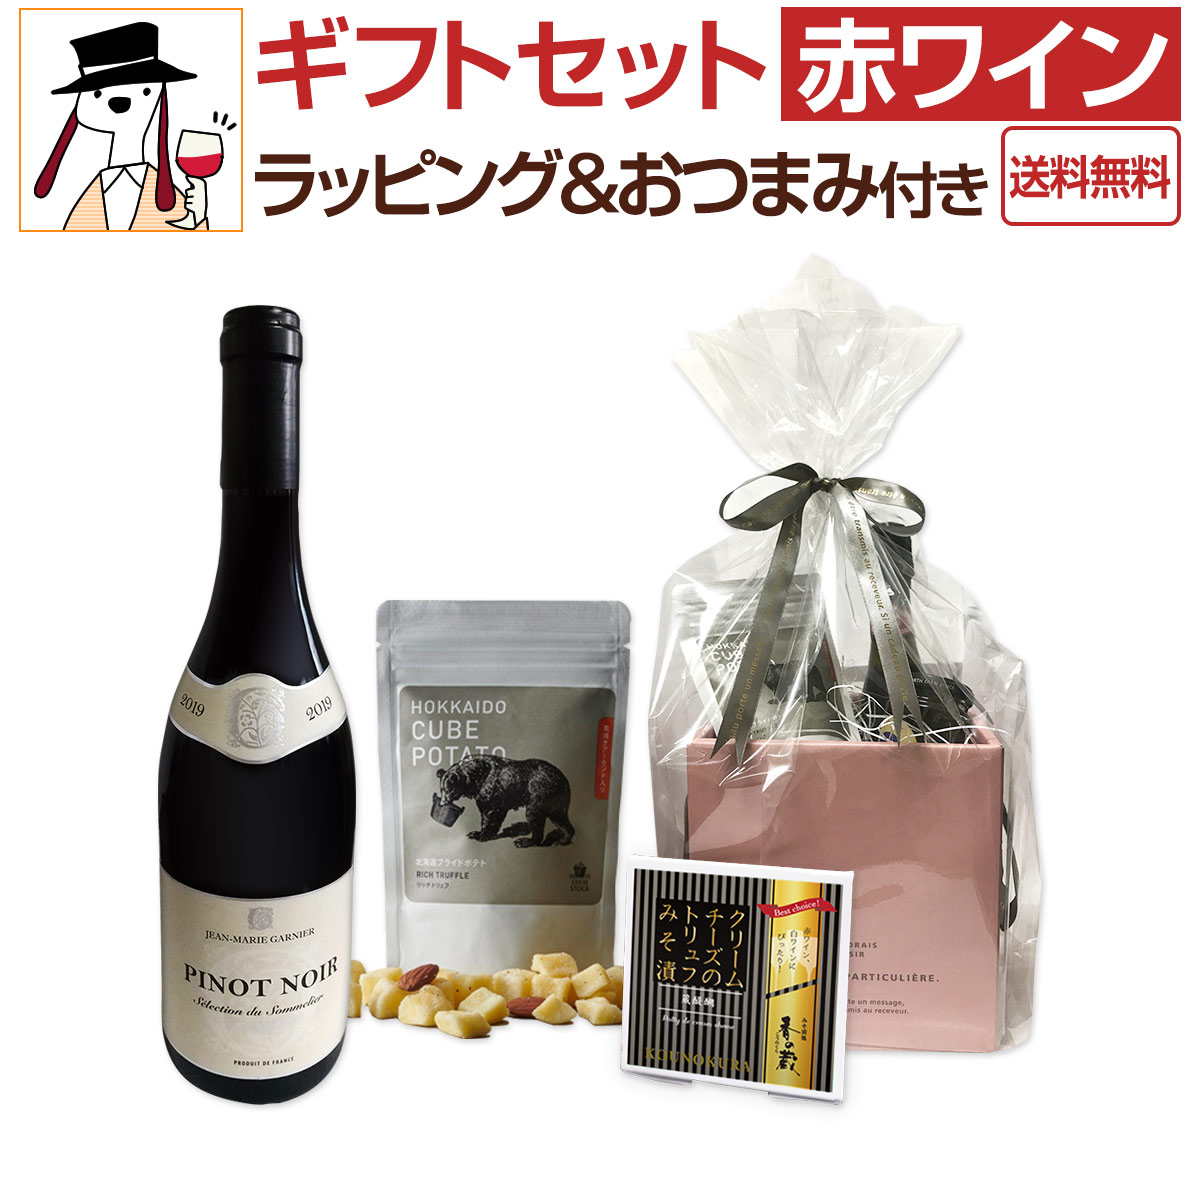 【送料無料】ギフトセット赤おつまみ付き 京橋ワイン